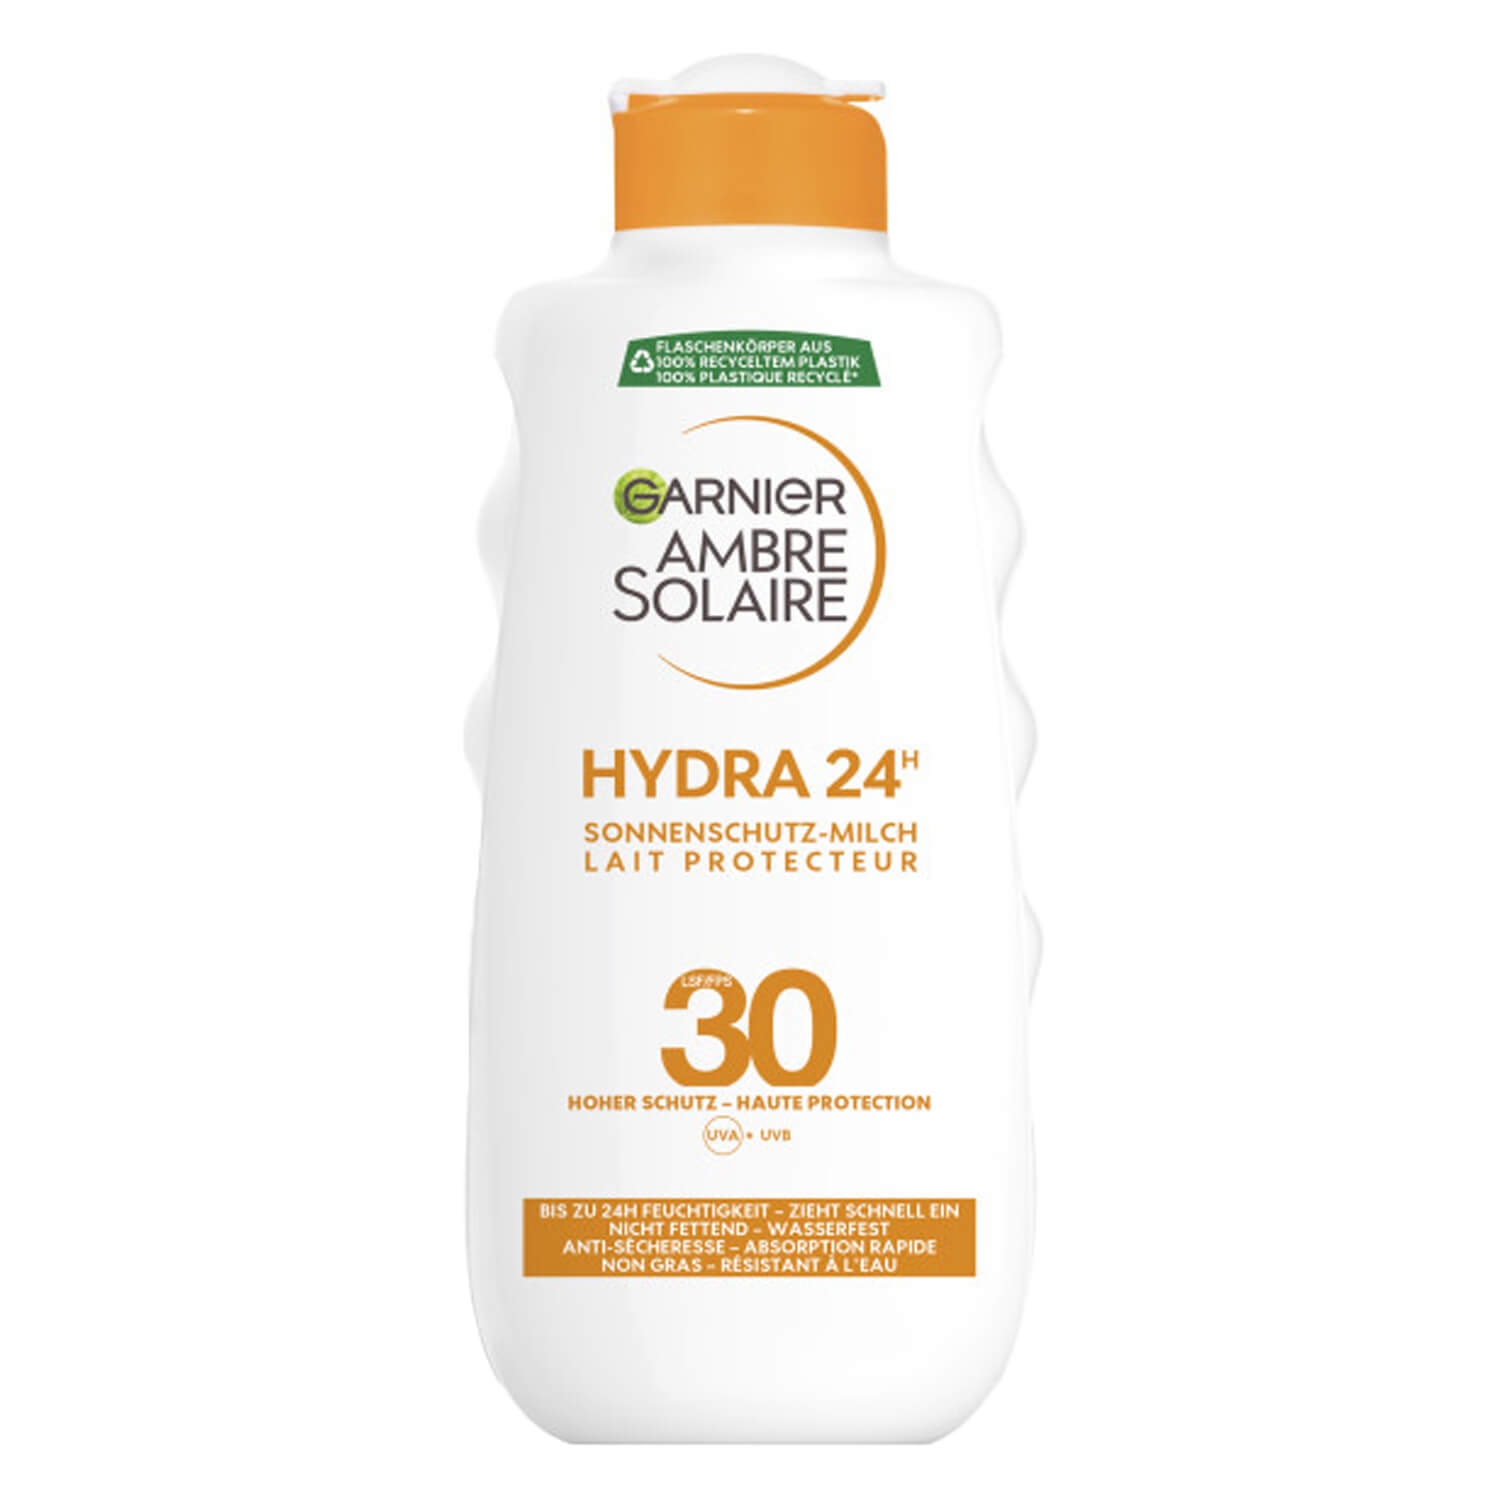 Produktbild von Ambre Solaire - Sonnenschutz-Milch LSF30 Hydra 24h